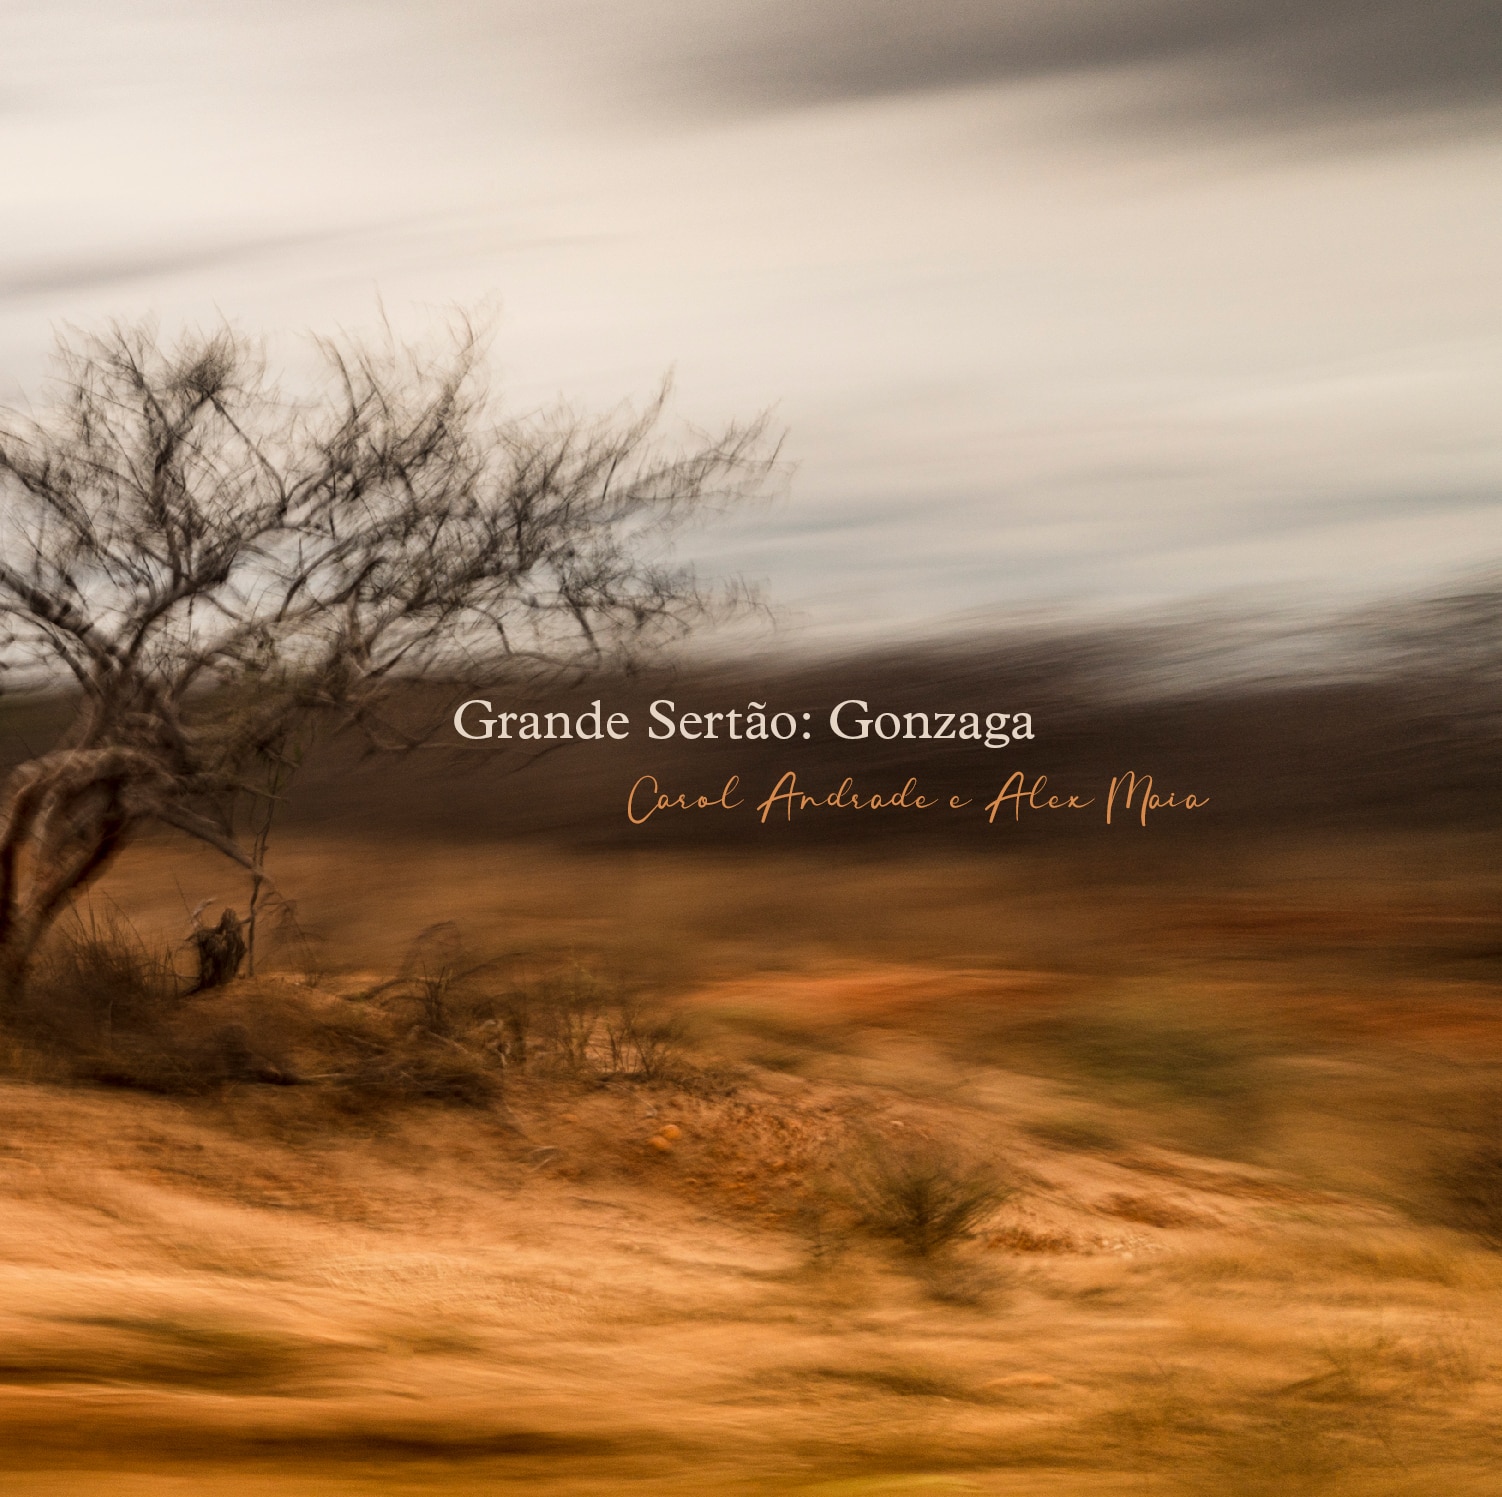 revistaprosaversoearte.com - Carol Andrade e Alex Maia lançam álbum 'Grande Sertão: Gonzaga'